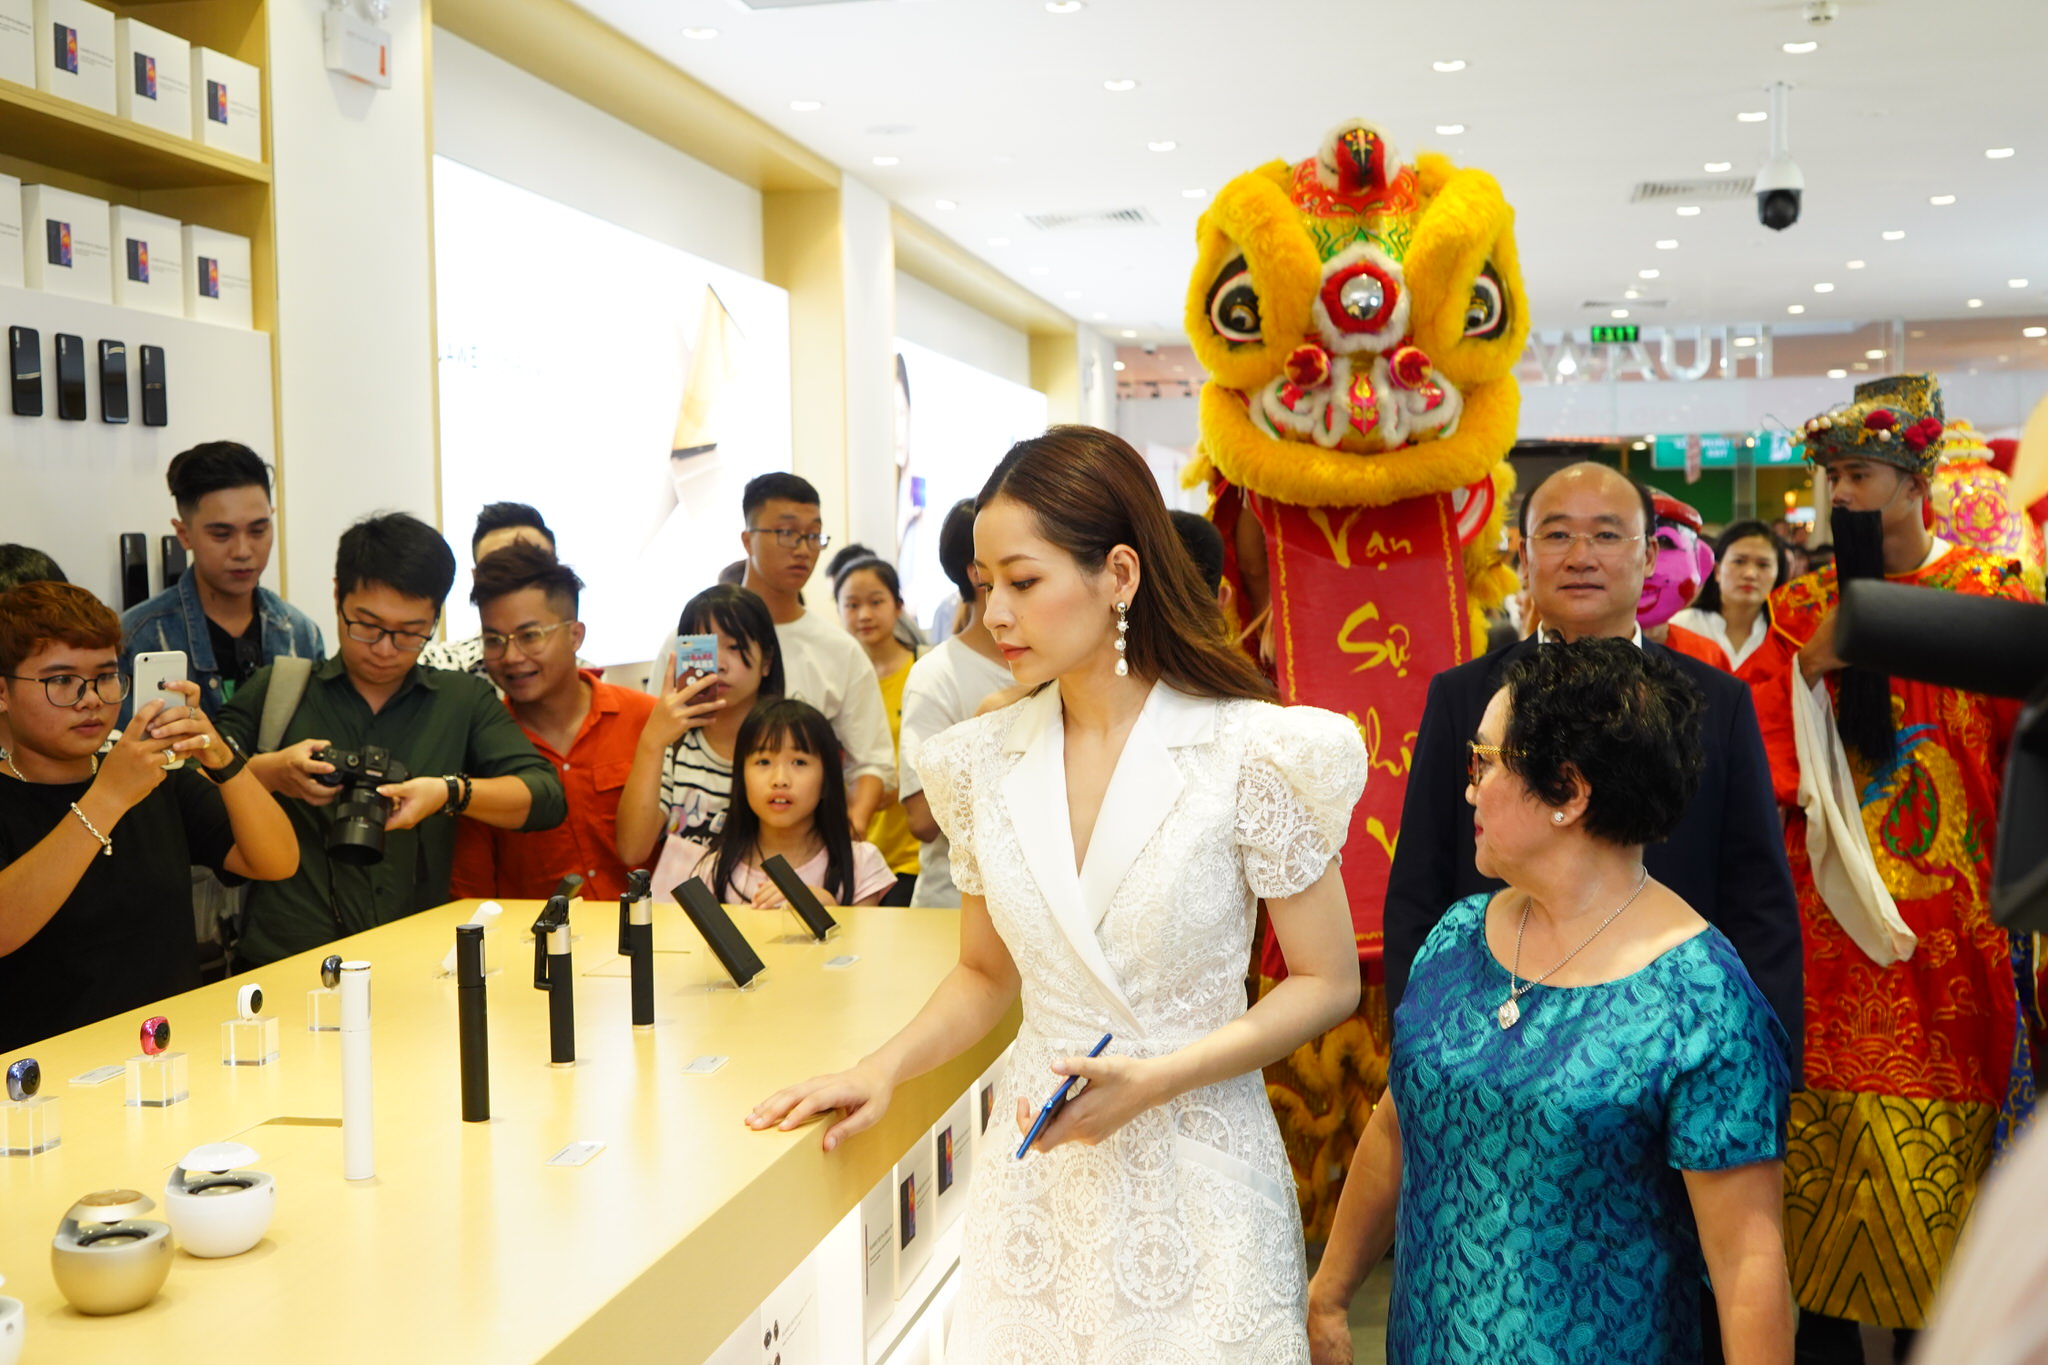 Huawei khai trương cửa hàng trải nghiệm đầu tiên tại Việt Nam